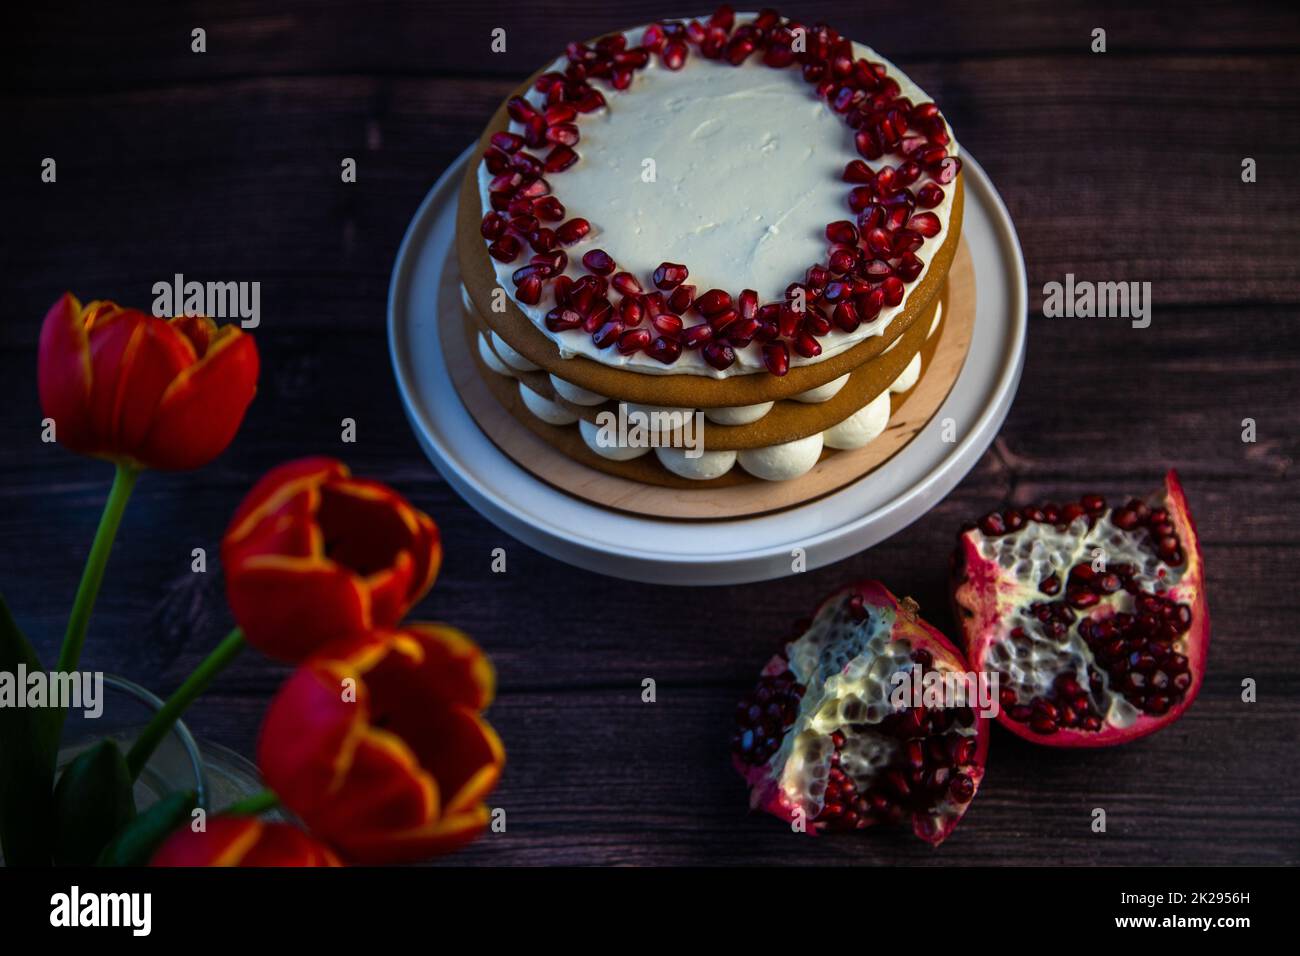 Ein dreischichtiger Kuchen aus Kuchen und weißer Sahne, dekoriert mit Granatapfel oben in einem Kreis, steht auf dunklem Hintergrund neben Tulpen und Granatäpfeln. Stockfoto